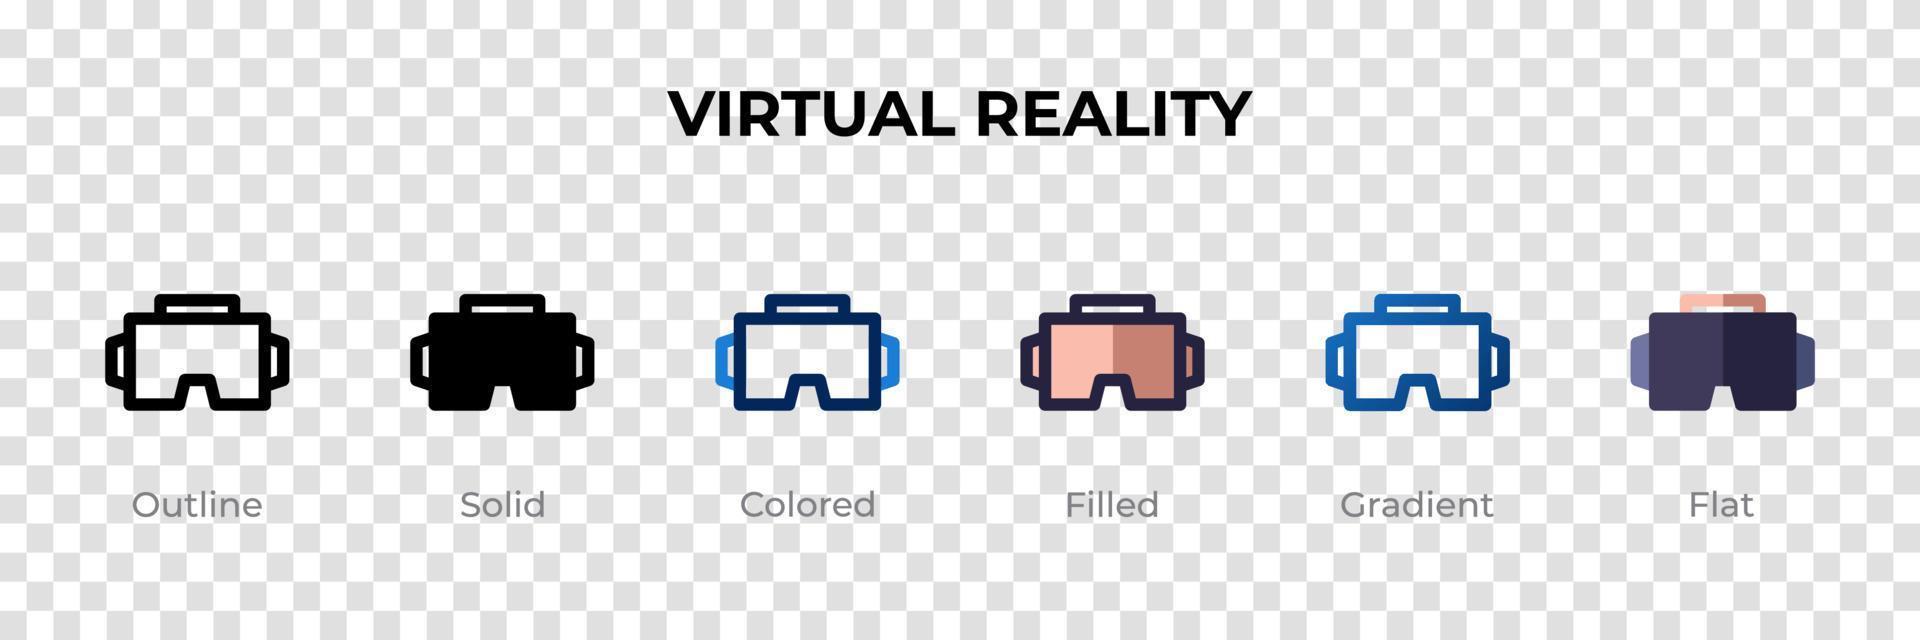 icono de realidad virtual en un estilo diferente. iconos vectoriales de realidad virtual diseñados en contorno, sólido, coloreado, relleno, degradado y estilo plano. símbolo, ilustración de logotipo. ilustración vectorial vector